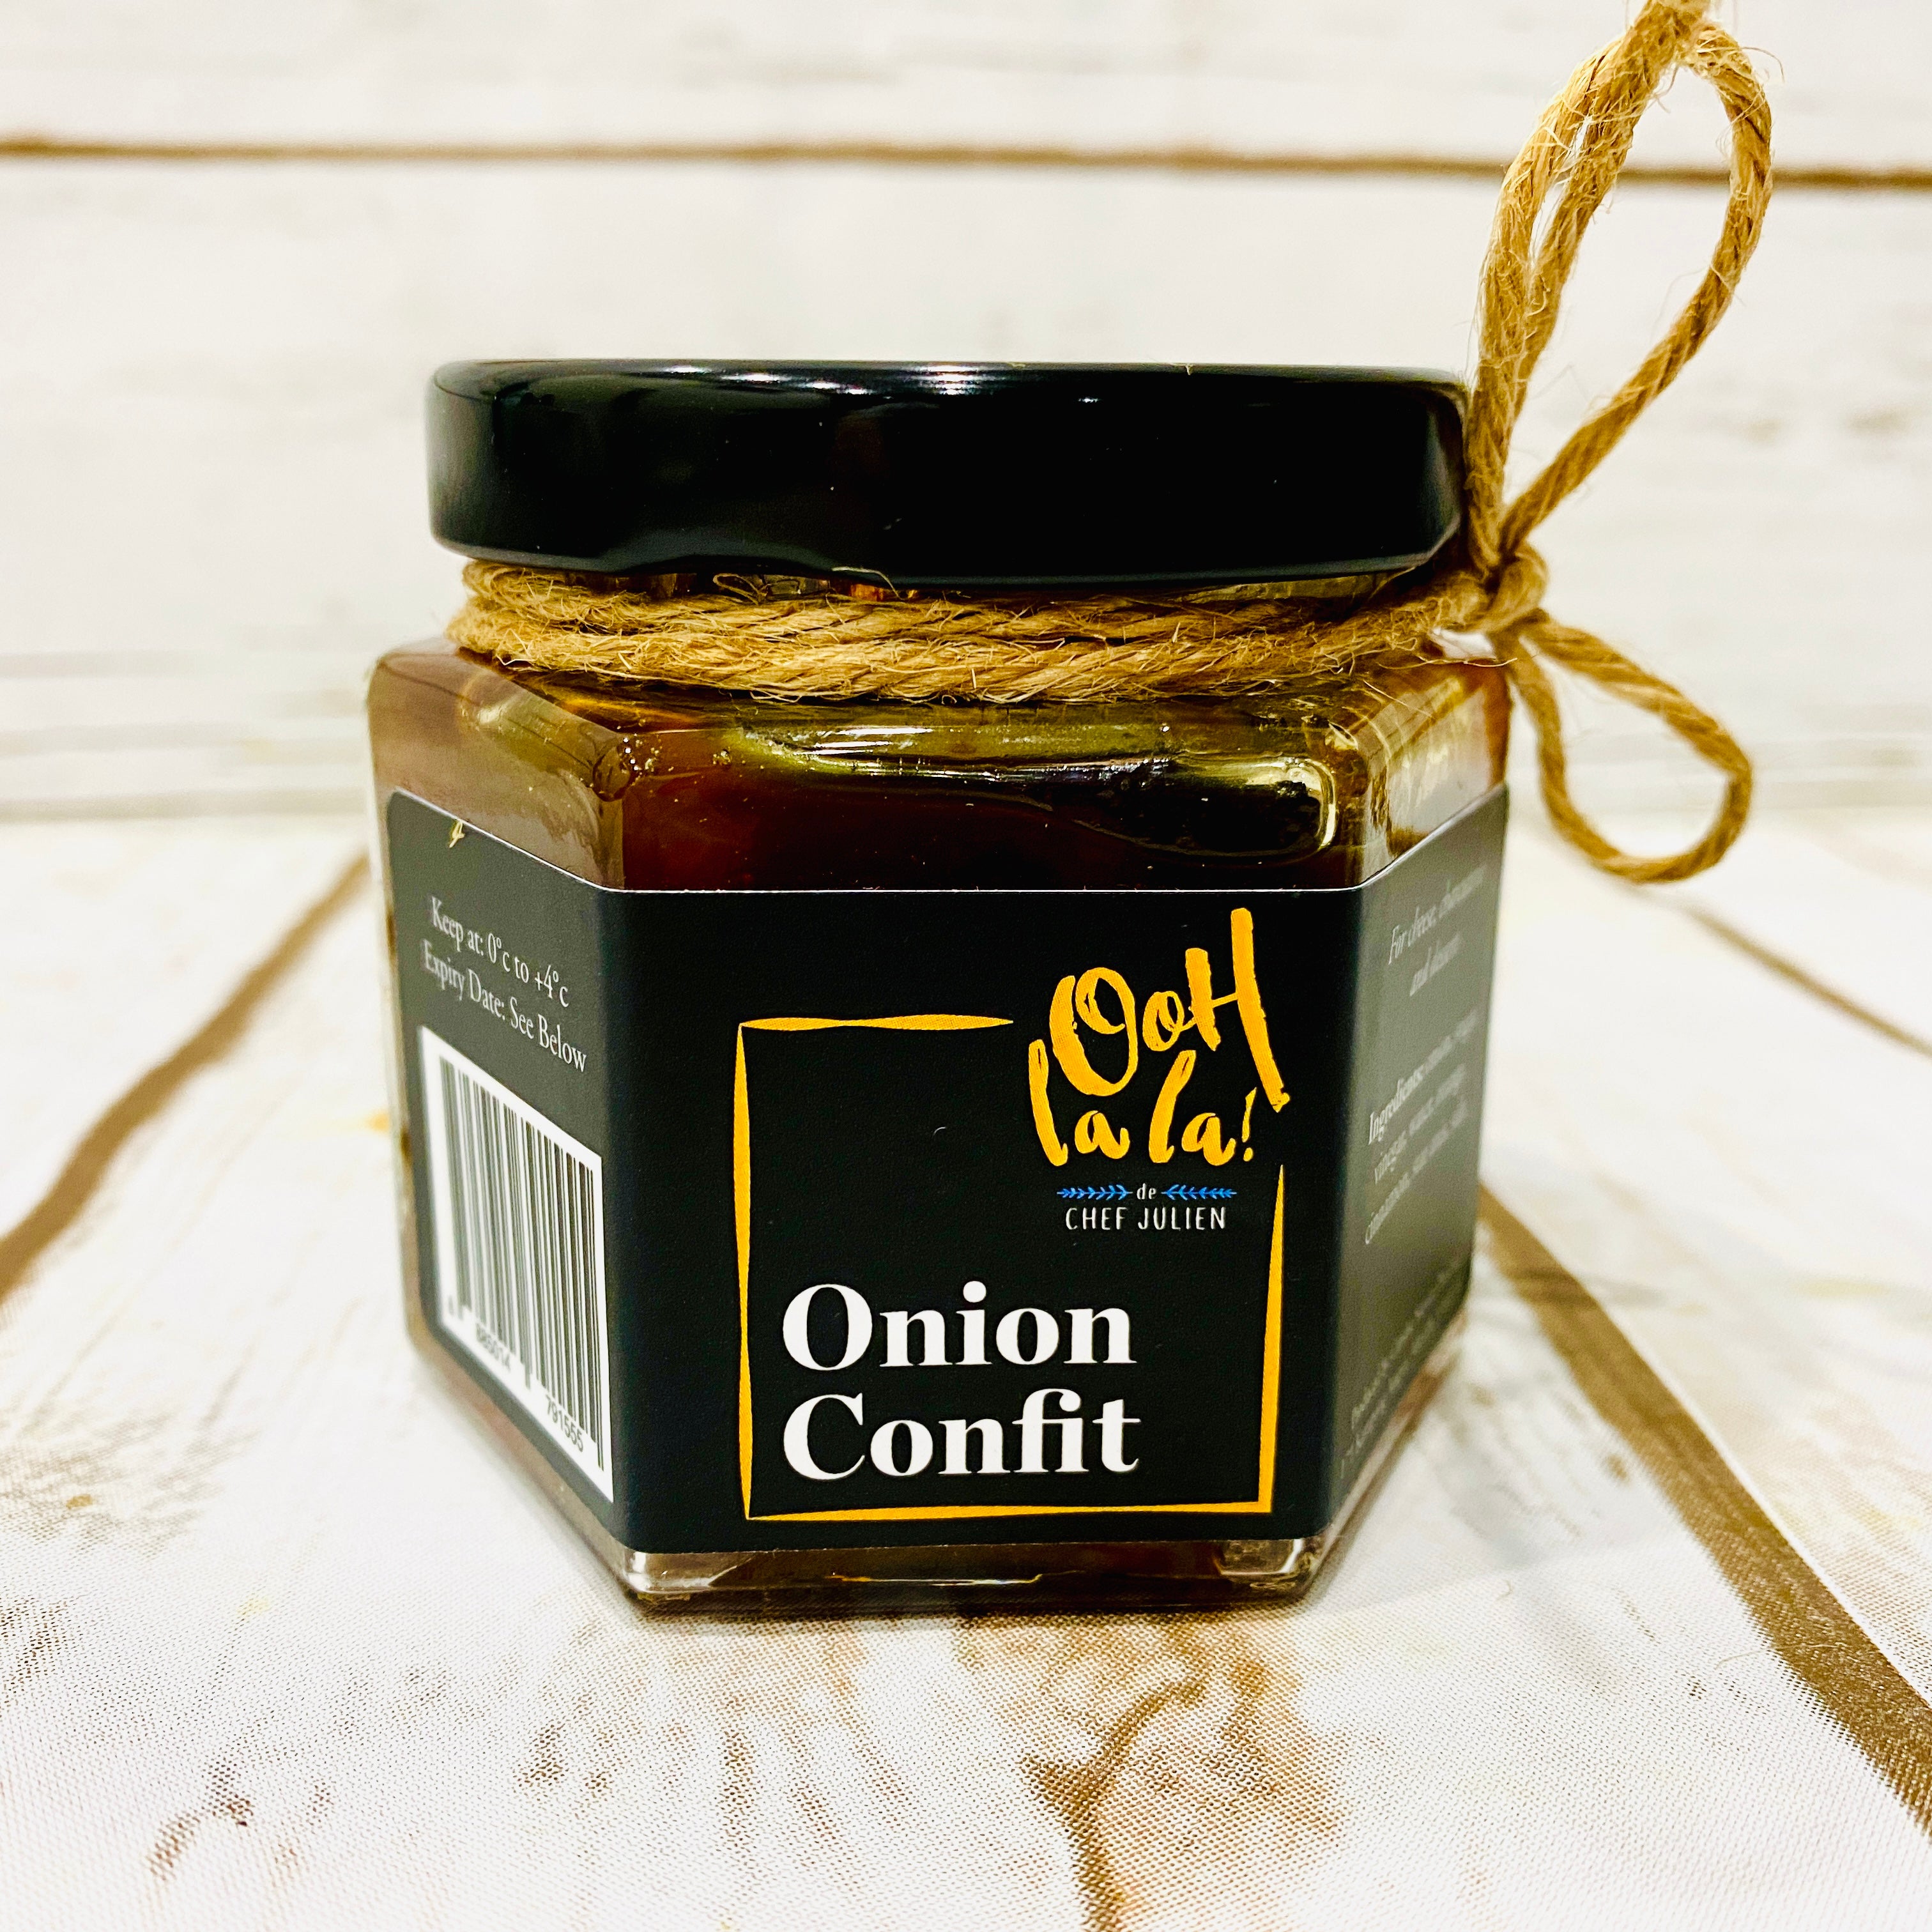 Onion Confit